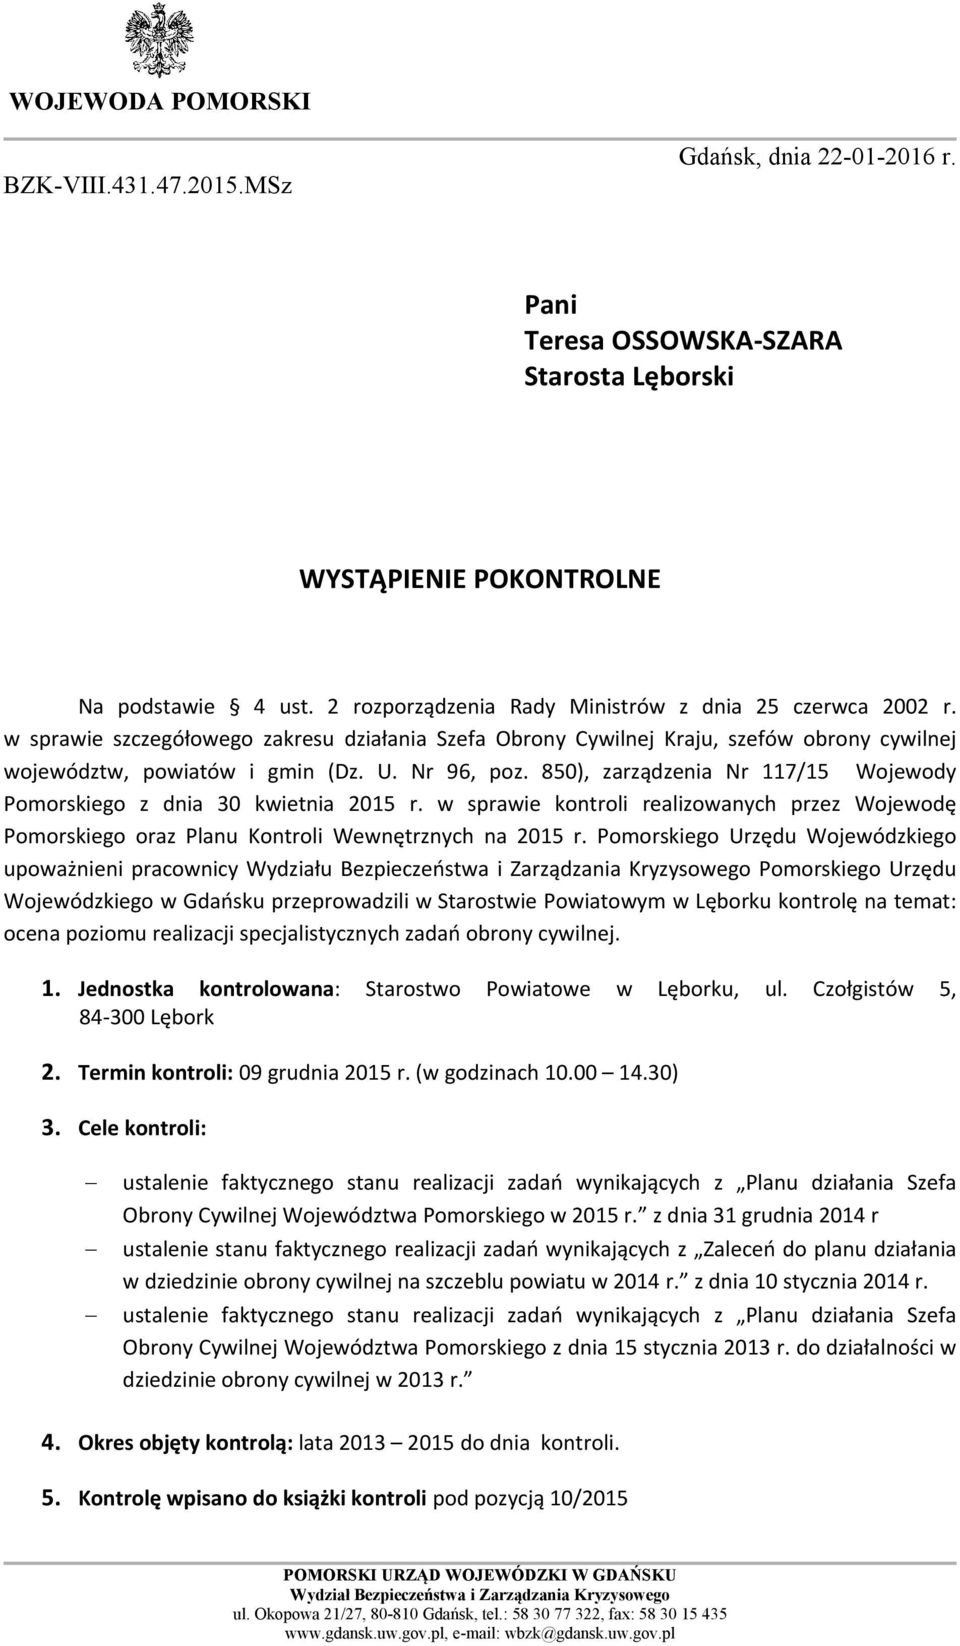 850), zarządzenia Nr 117/15 Wojewody Pomorskiego z dnia 30 kwietnia 2015 r. w sprawie kontroli realizowanych przez Wojewodę Pomorskiego oraz Planu Kontroli Wewnętrznych na 2015 r.